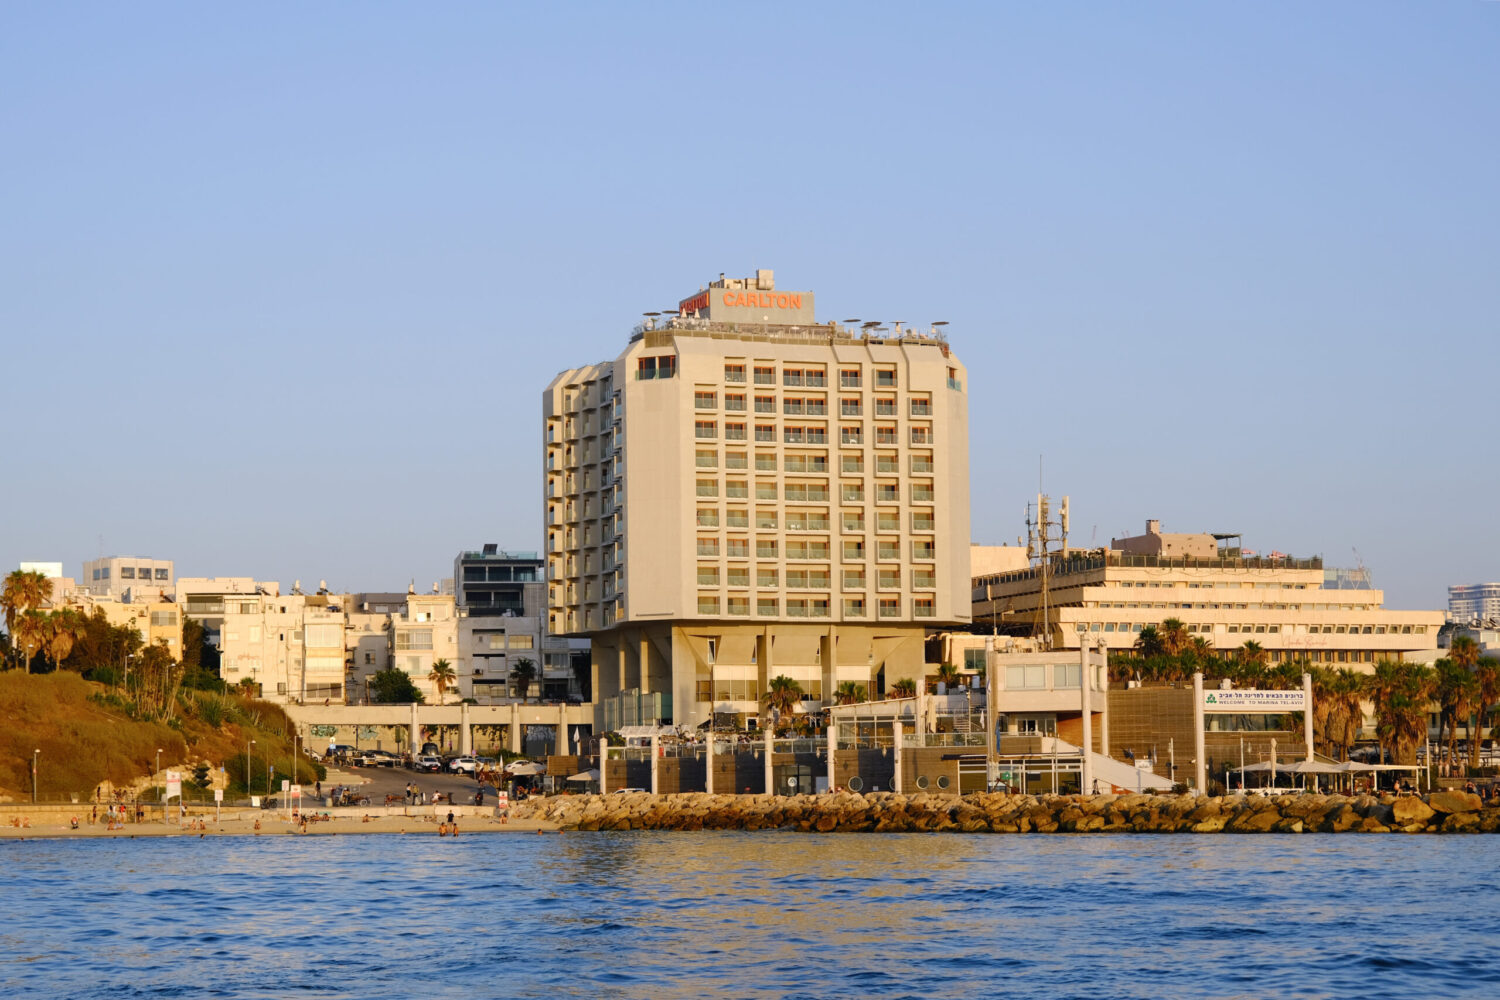 TEL AVIV - CARLTON HOTEL